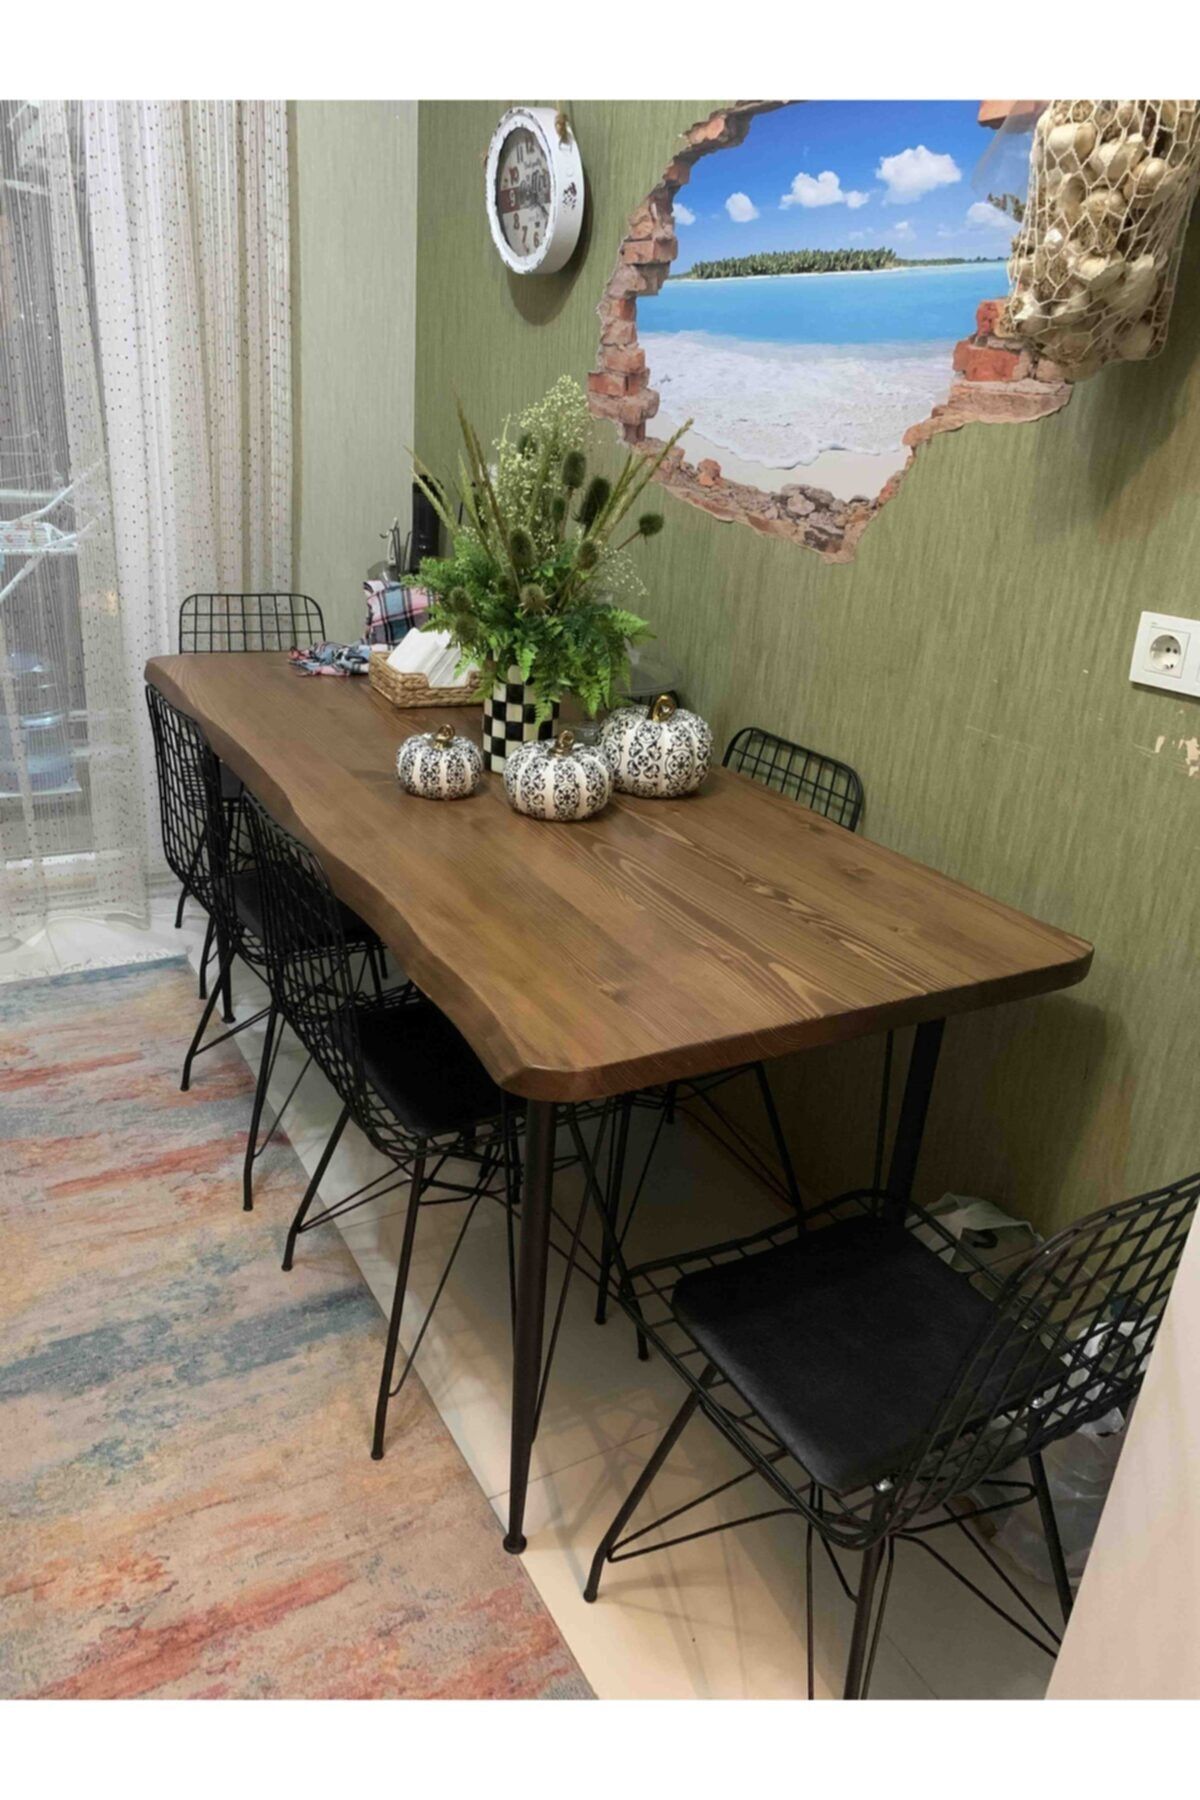 Ressa Home Sedef Lüx Doğal Kütük Tel Ayaklı Mutfak Masası Takımı-mutfak Masası-salon Mutfak Takımı 80x160 Cm